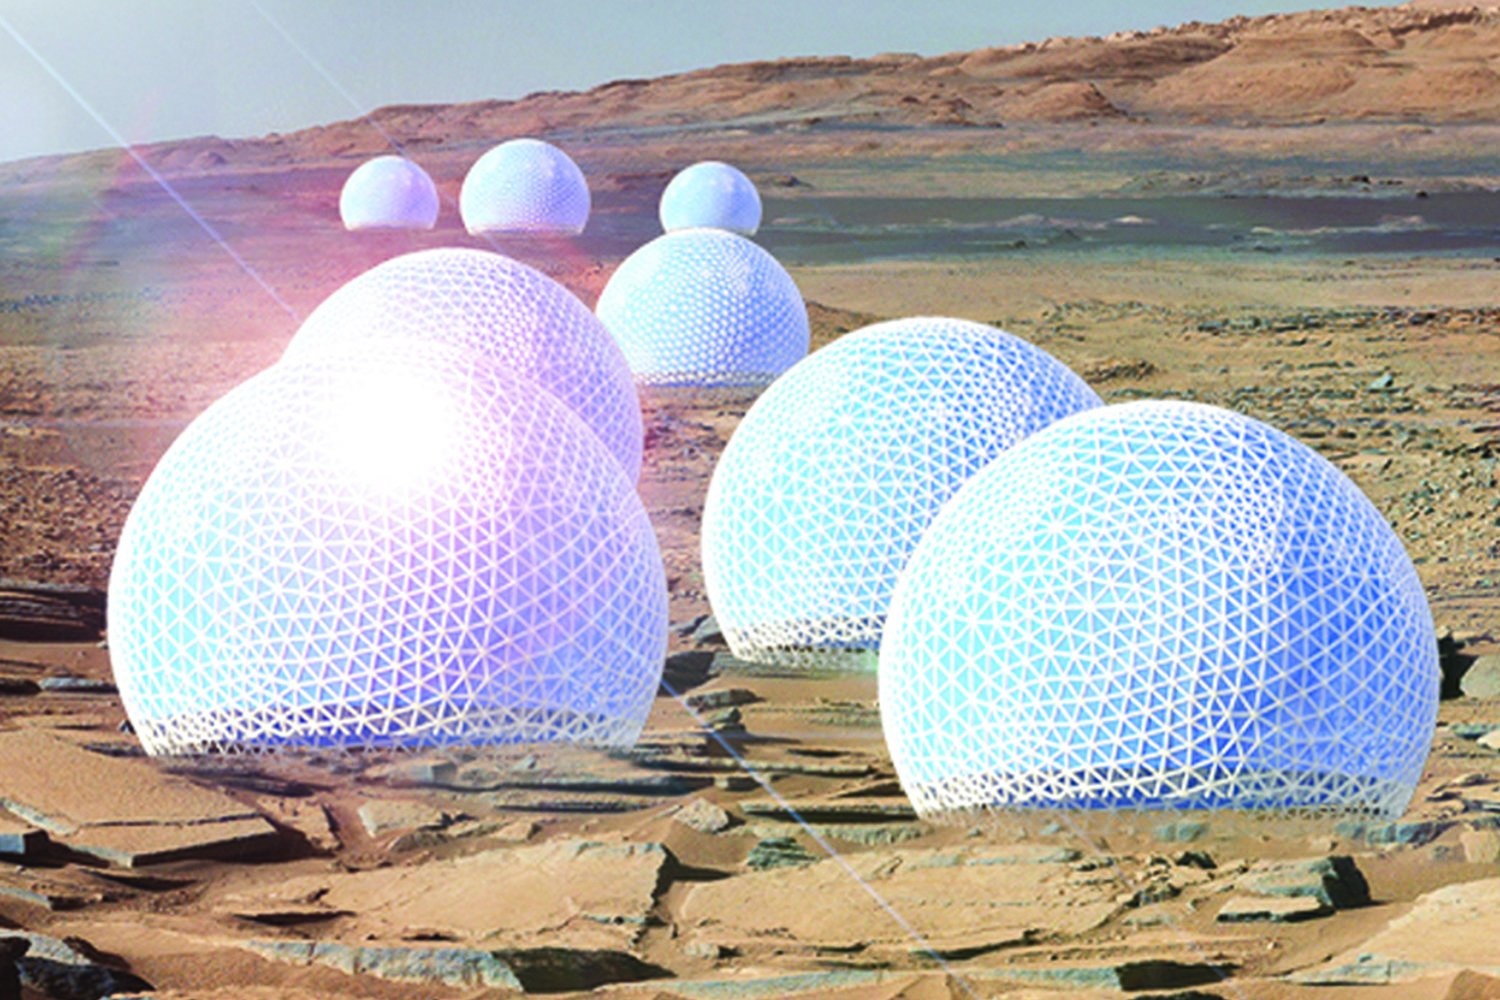 Проект поселения на Марсе, колеса для нового марсохода, картошка и черви в марсианской почве - 2